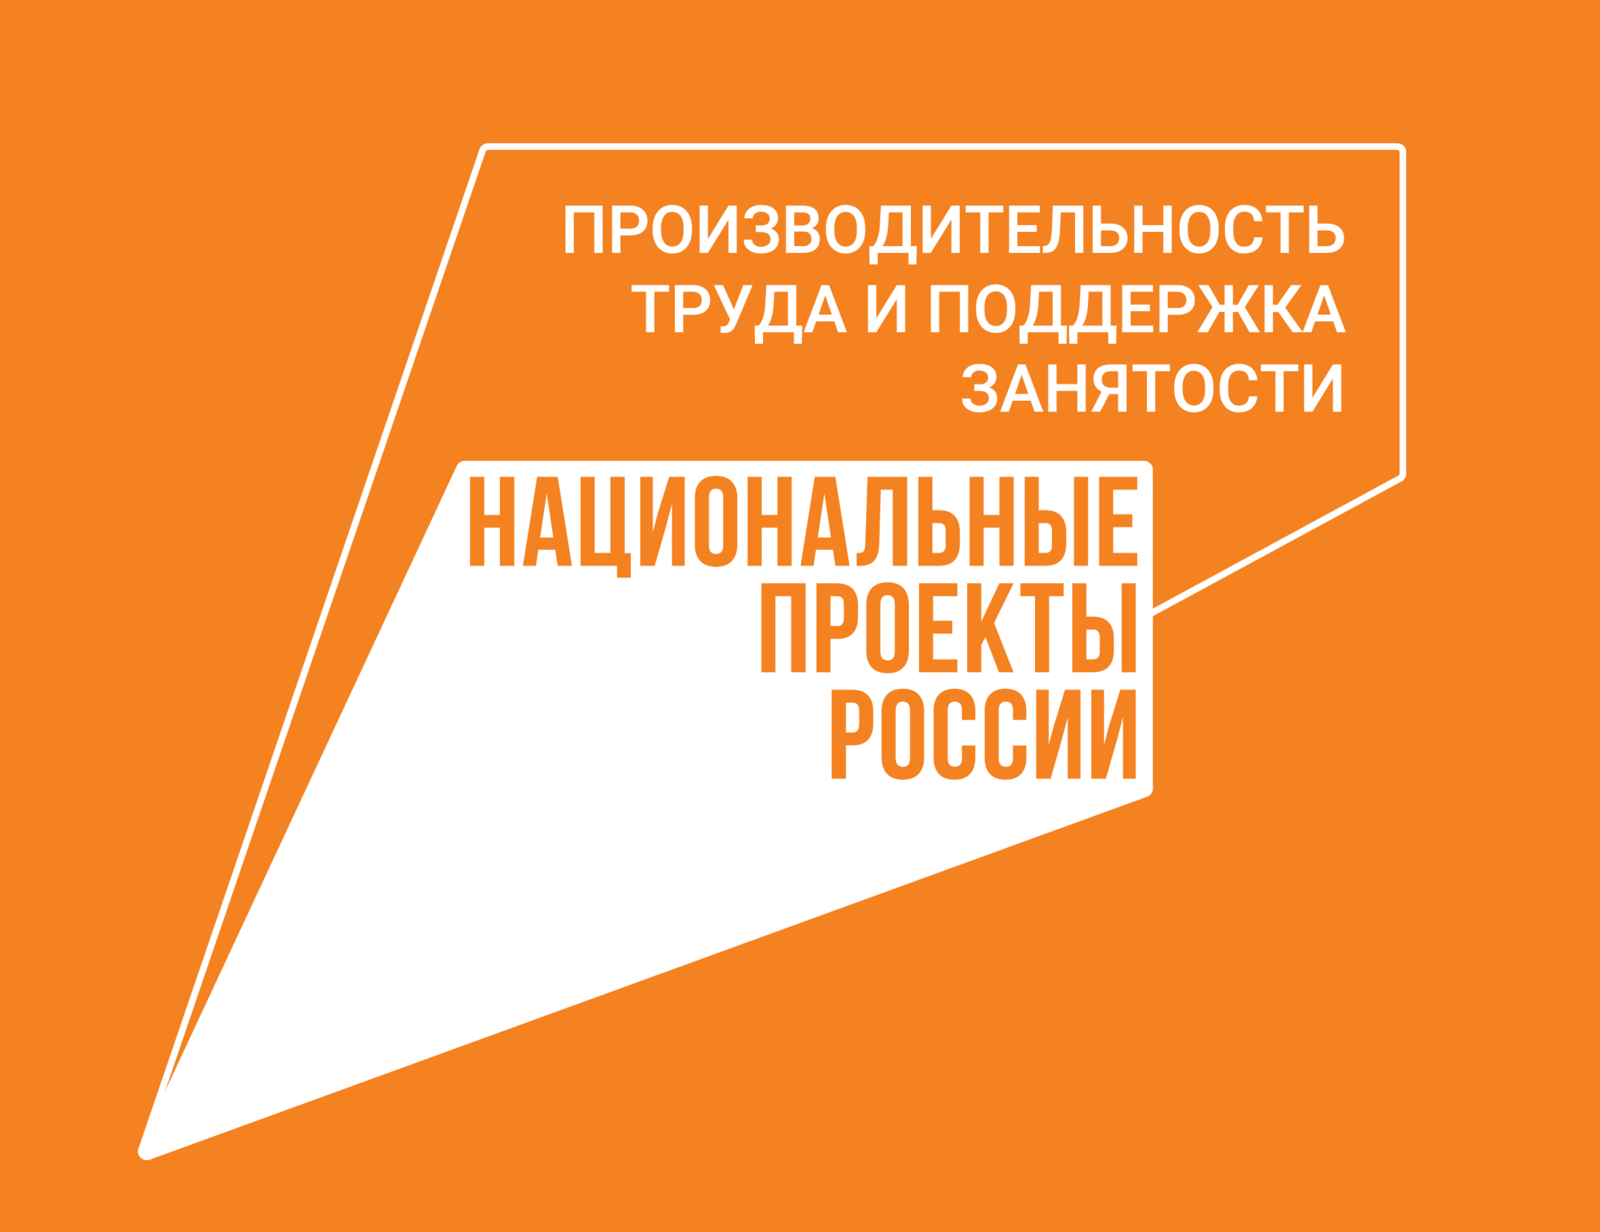 Башкирия заняла 3 место в рейтинге регионов РФ по производительности труда